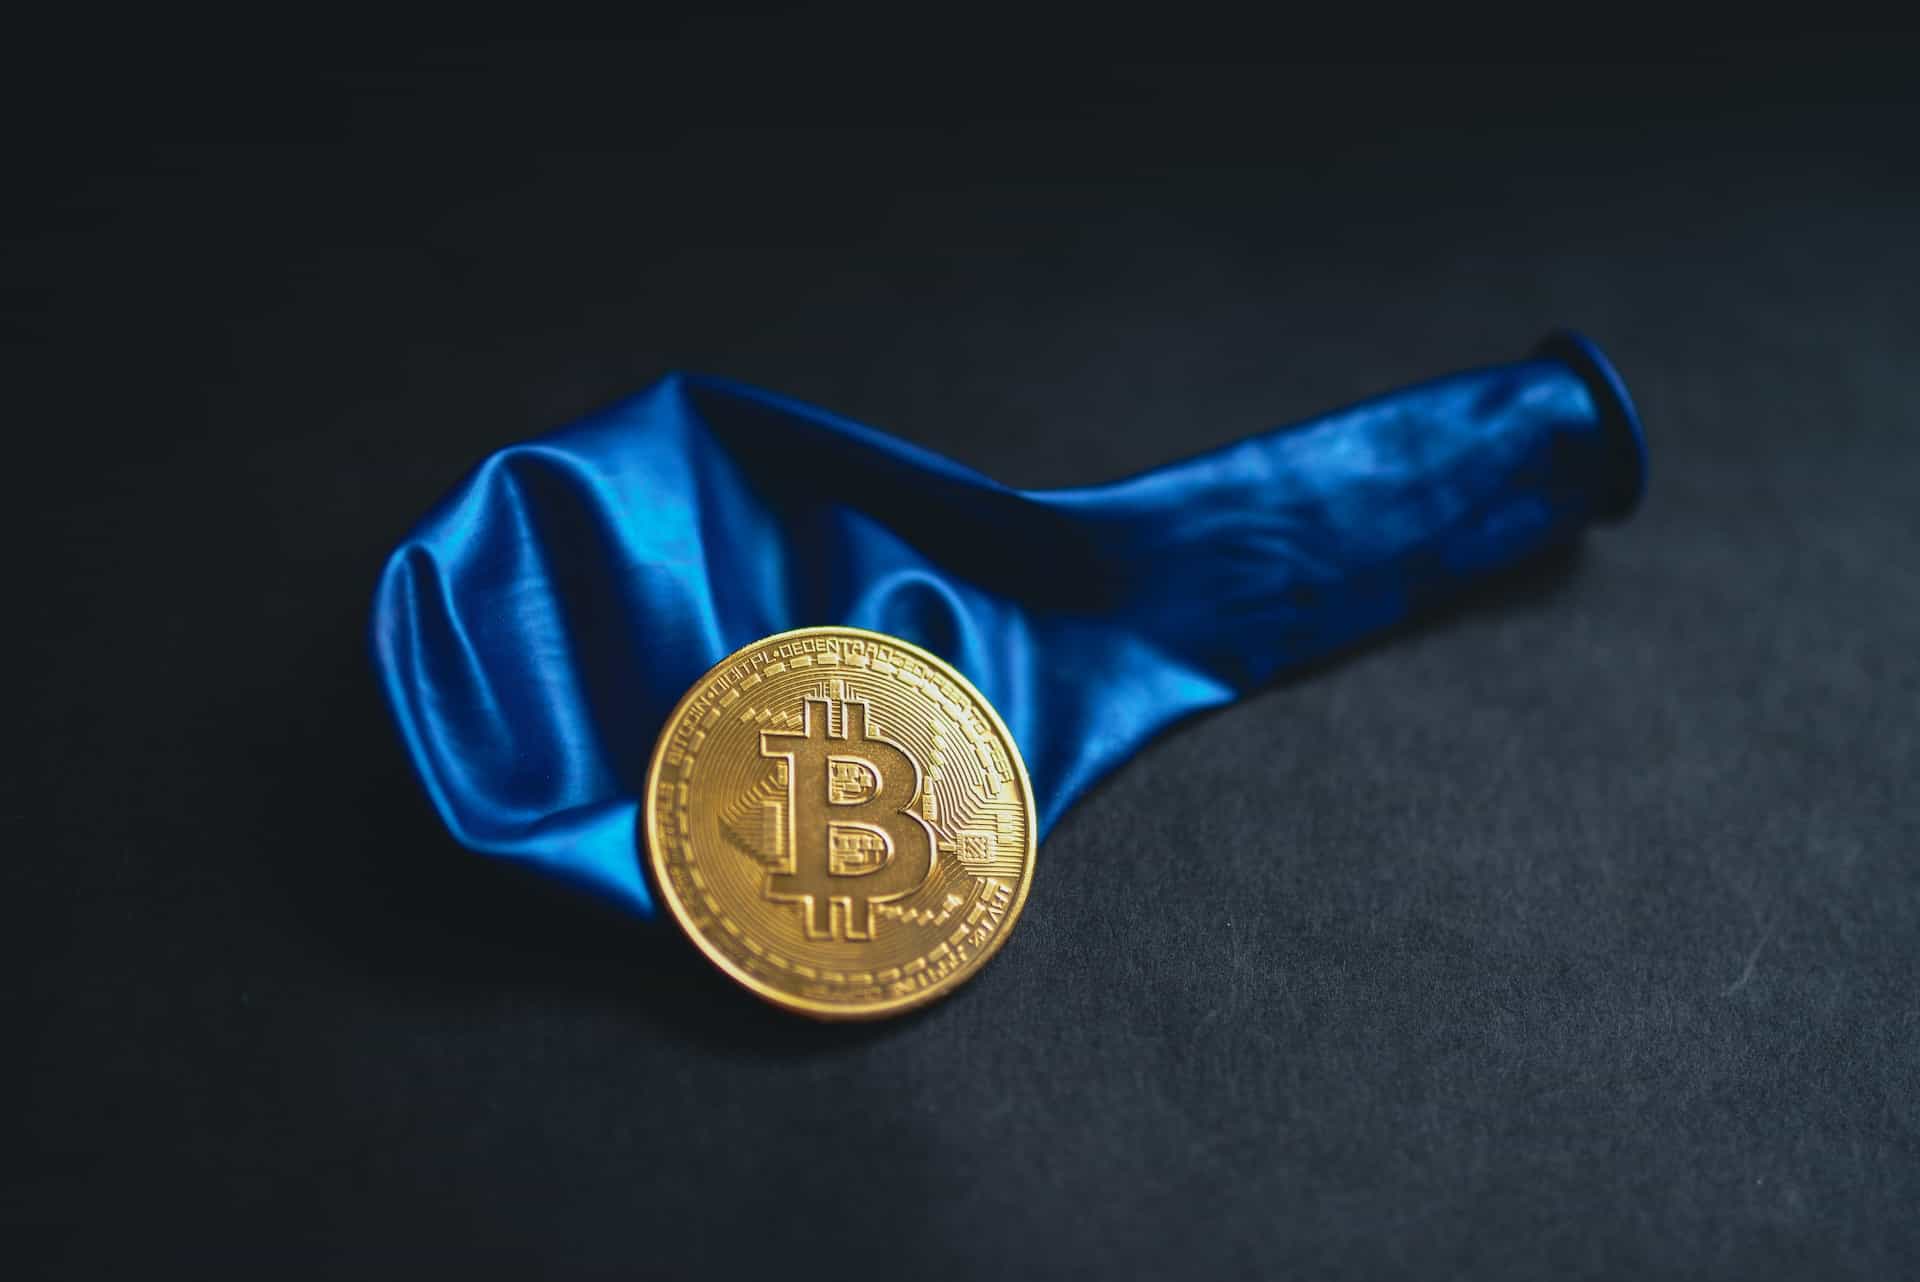 Ein luftleerer Luftballon mit einer Bitcoin-Münze